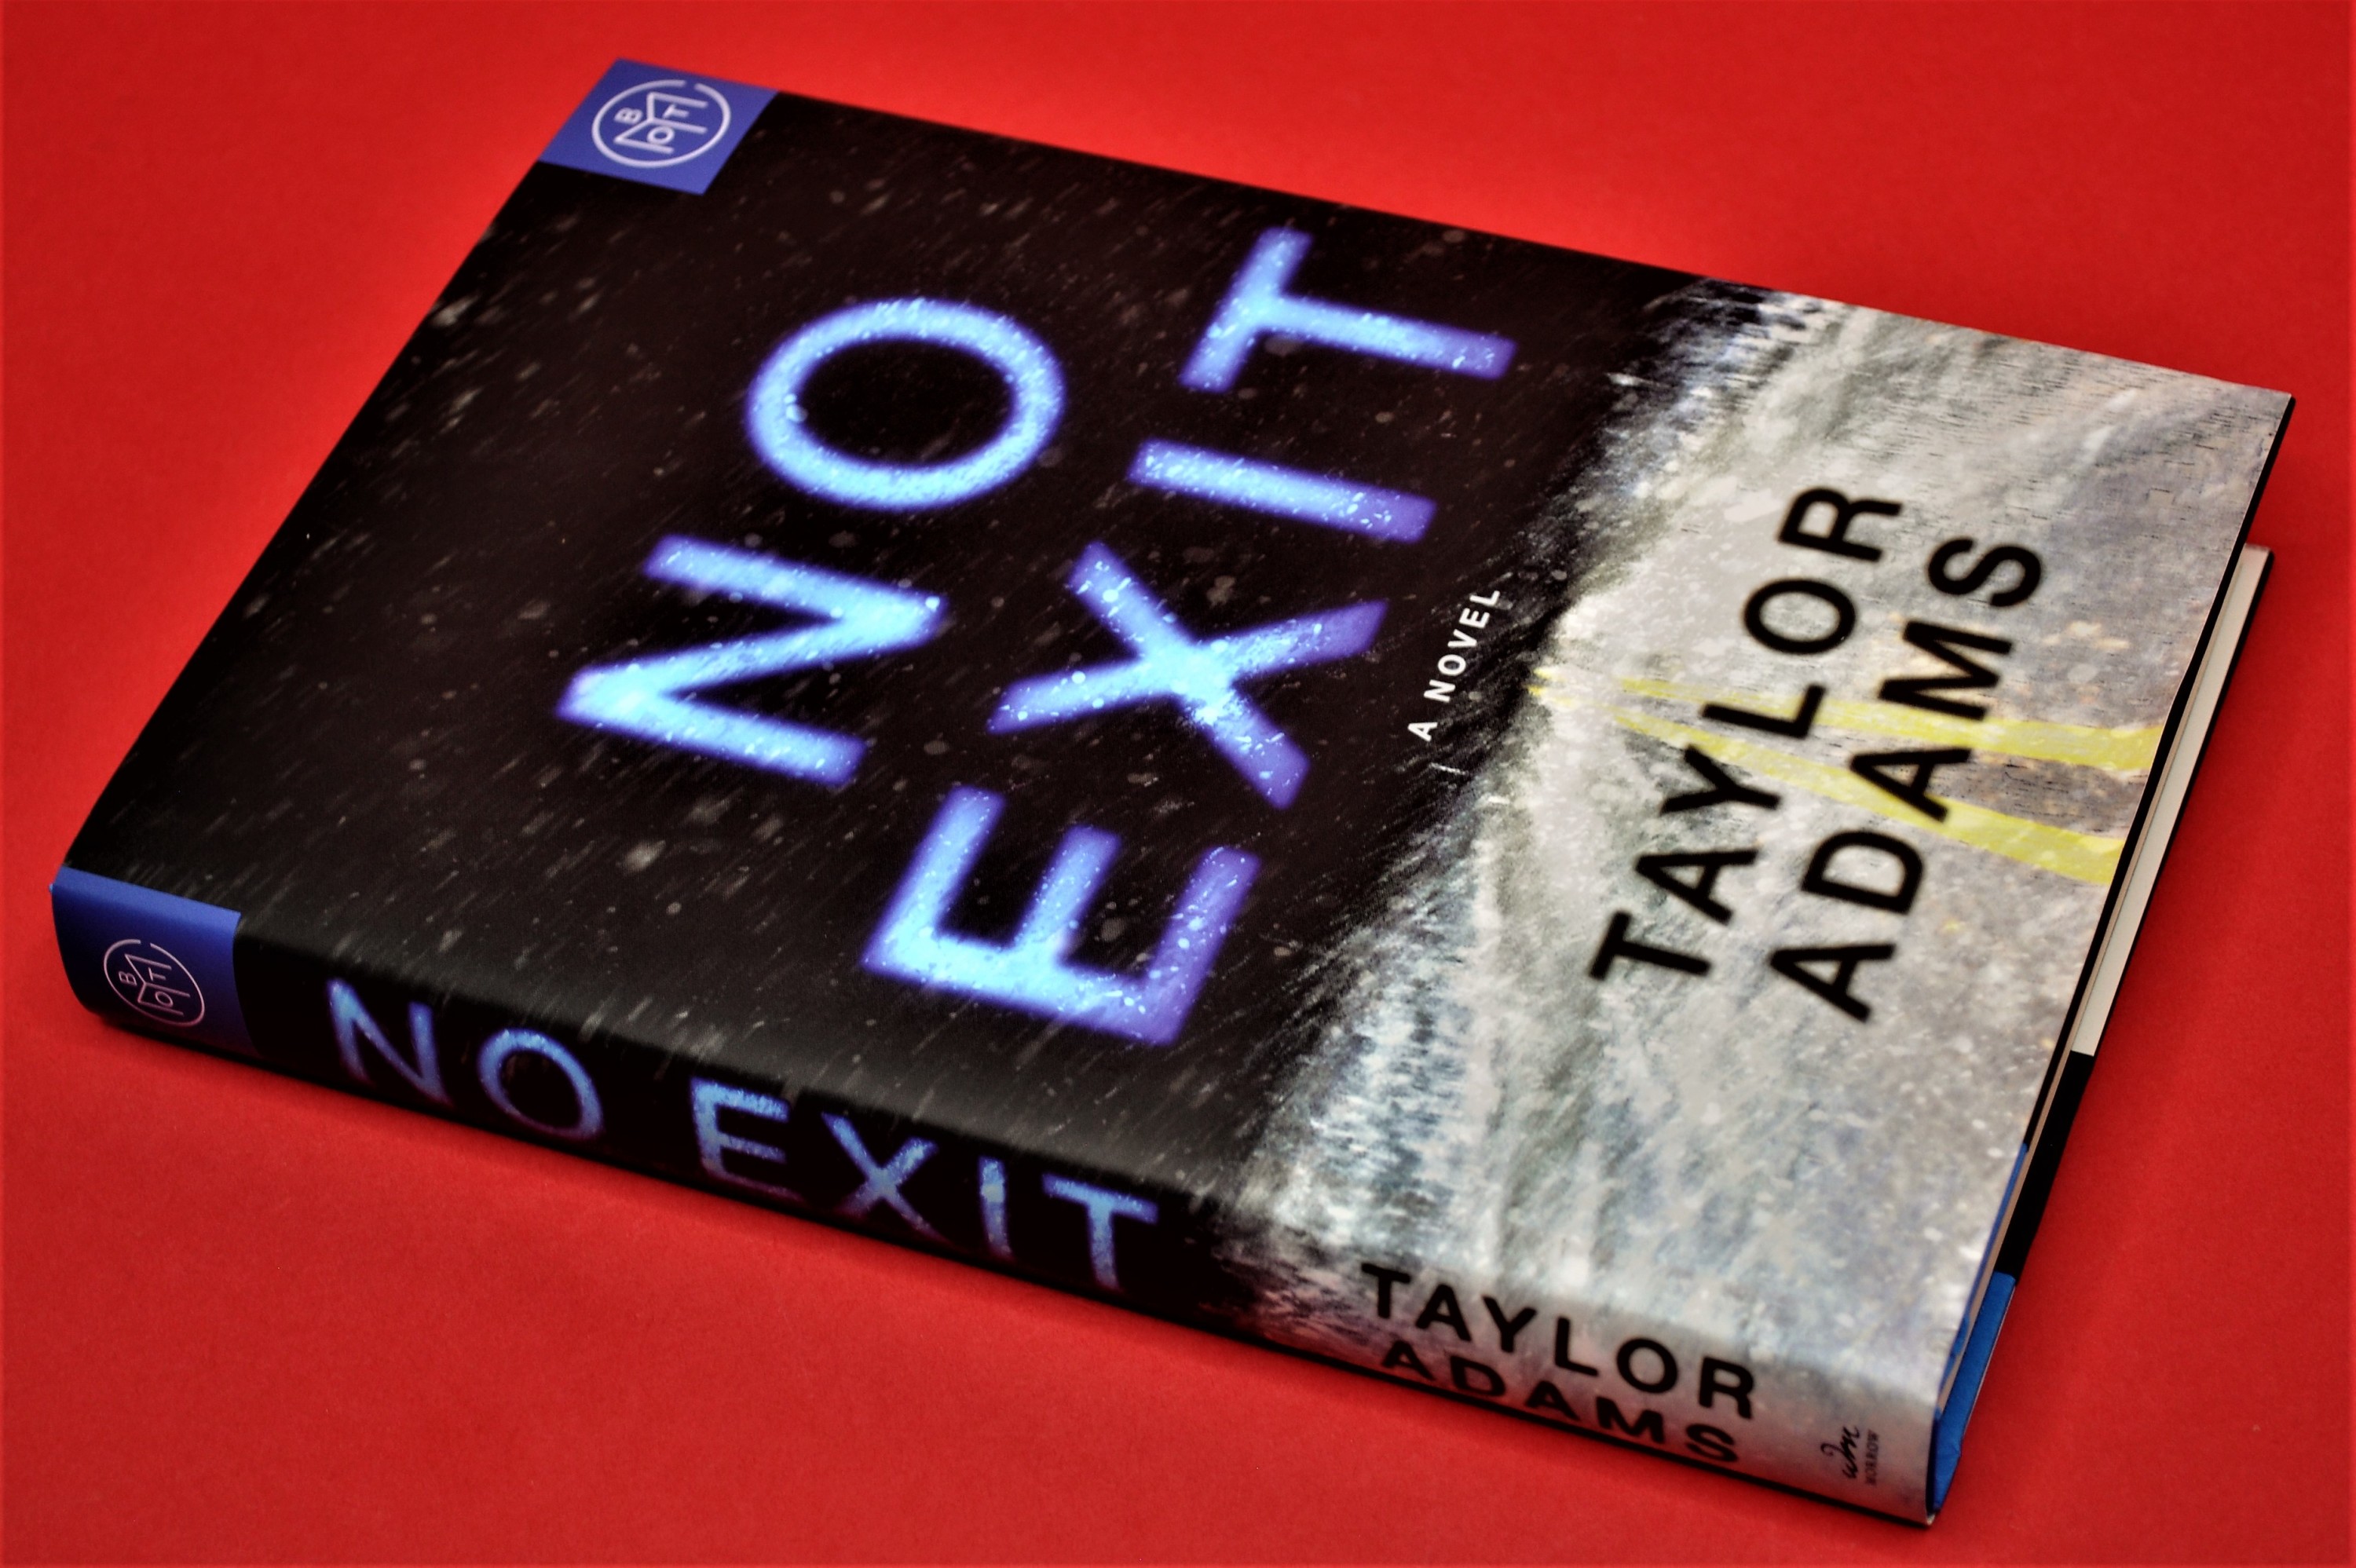 No Exit Taylor Adams Book Review